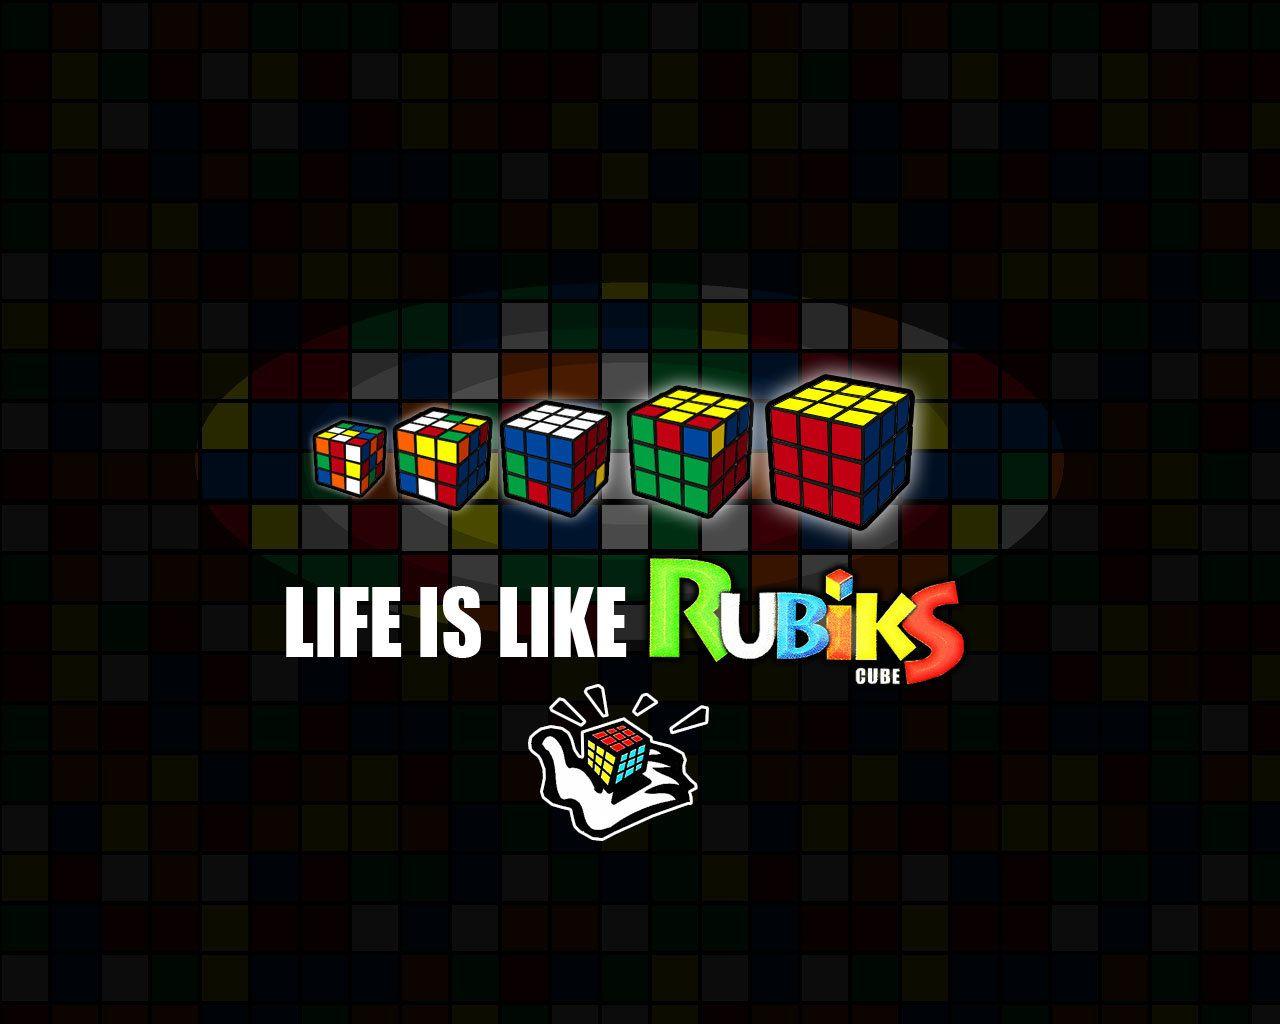 Life is like rubik's cube